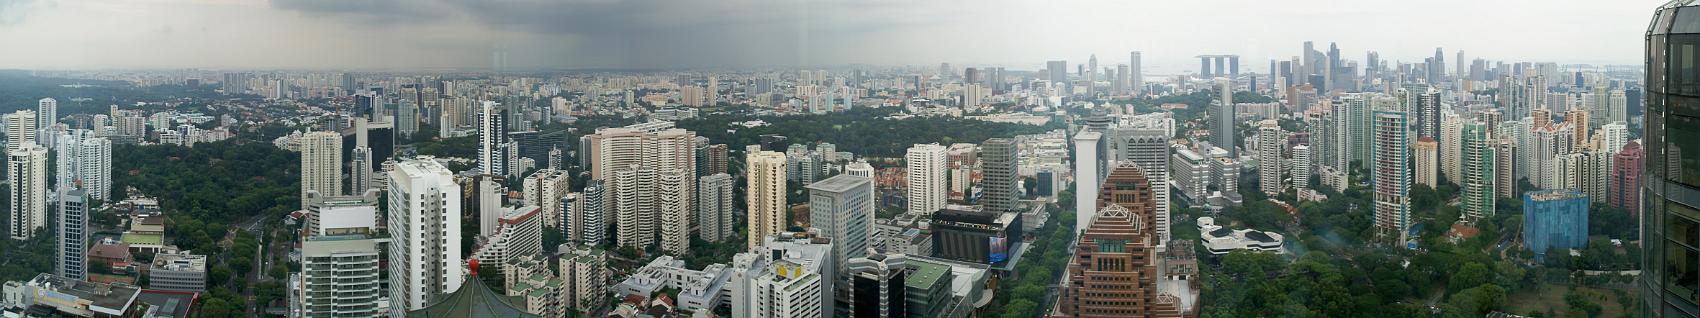 20110622-Singapore-Panorama-9.JPEG